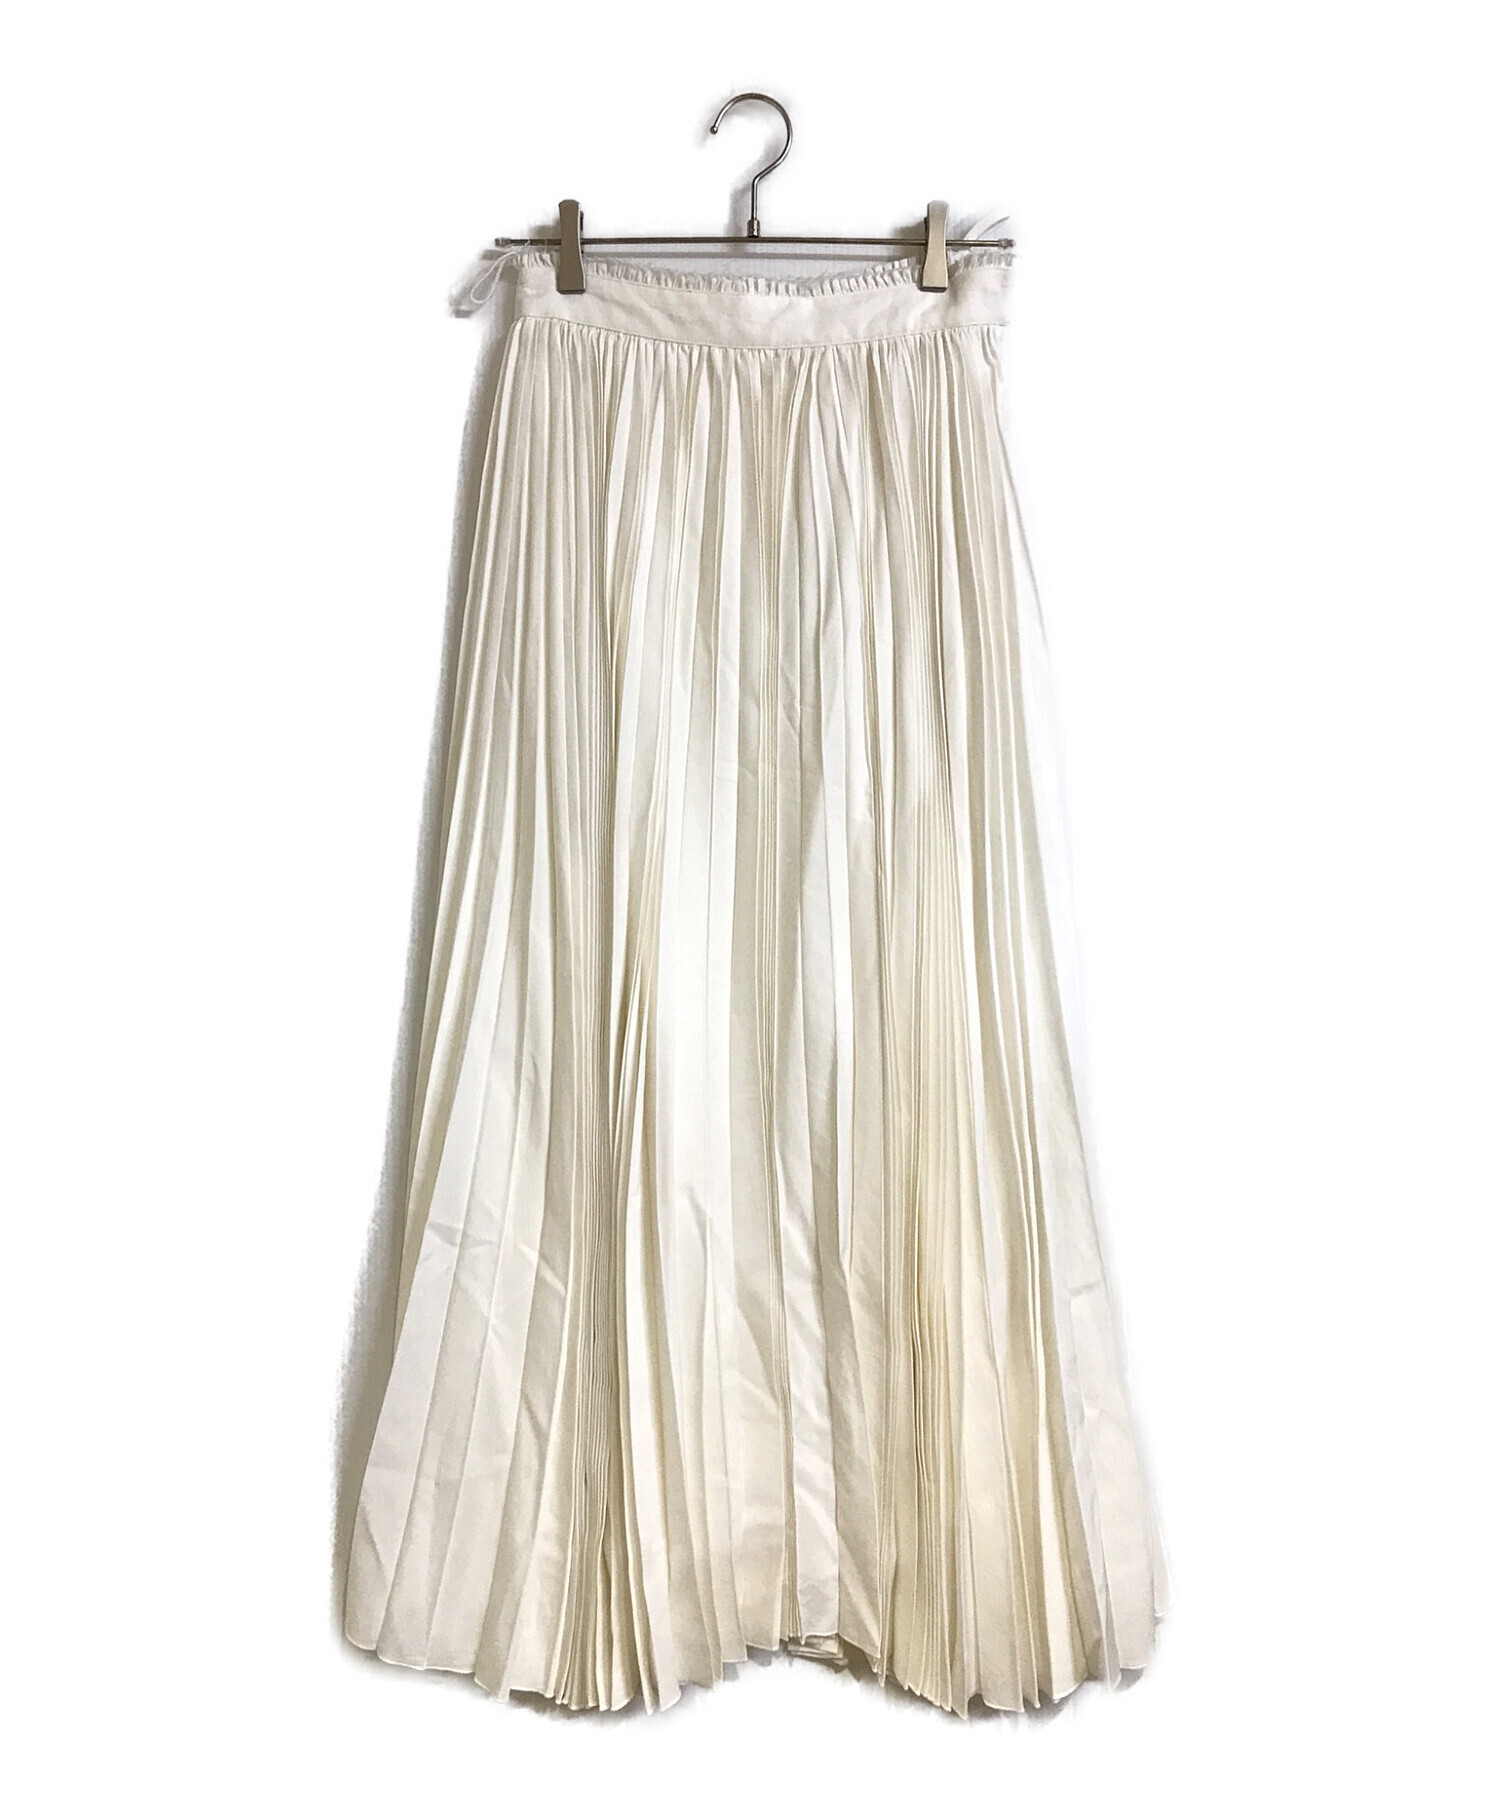 ebure (エブール) アコーディオンプリーツロングスカート ホワイト サイズ:36